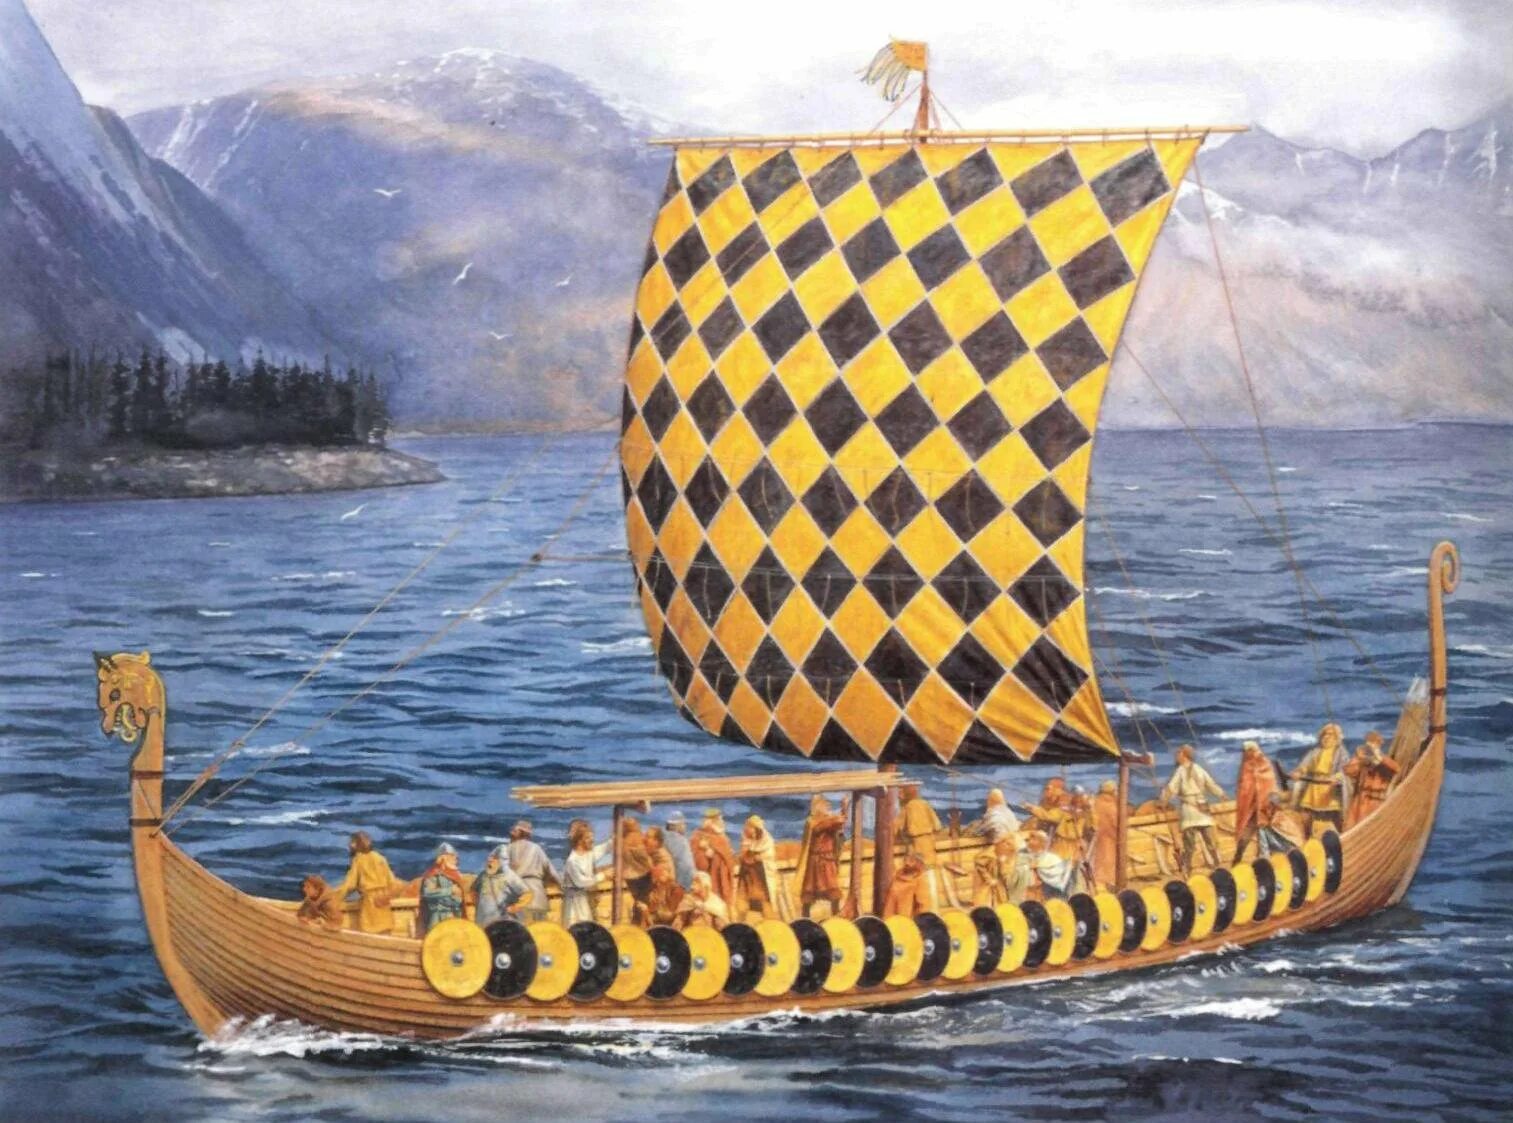 Карви корабль викингов. Ладья викингов дракар. Гокштадский корабль (дракар). Корабль викингов Драккар 10 век. Без ладьи